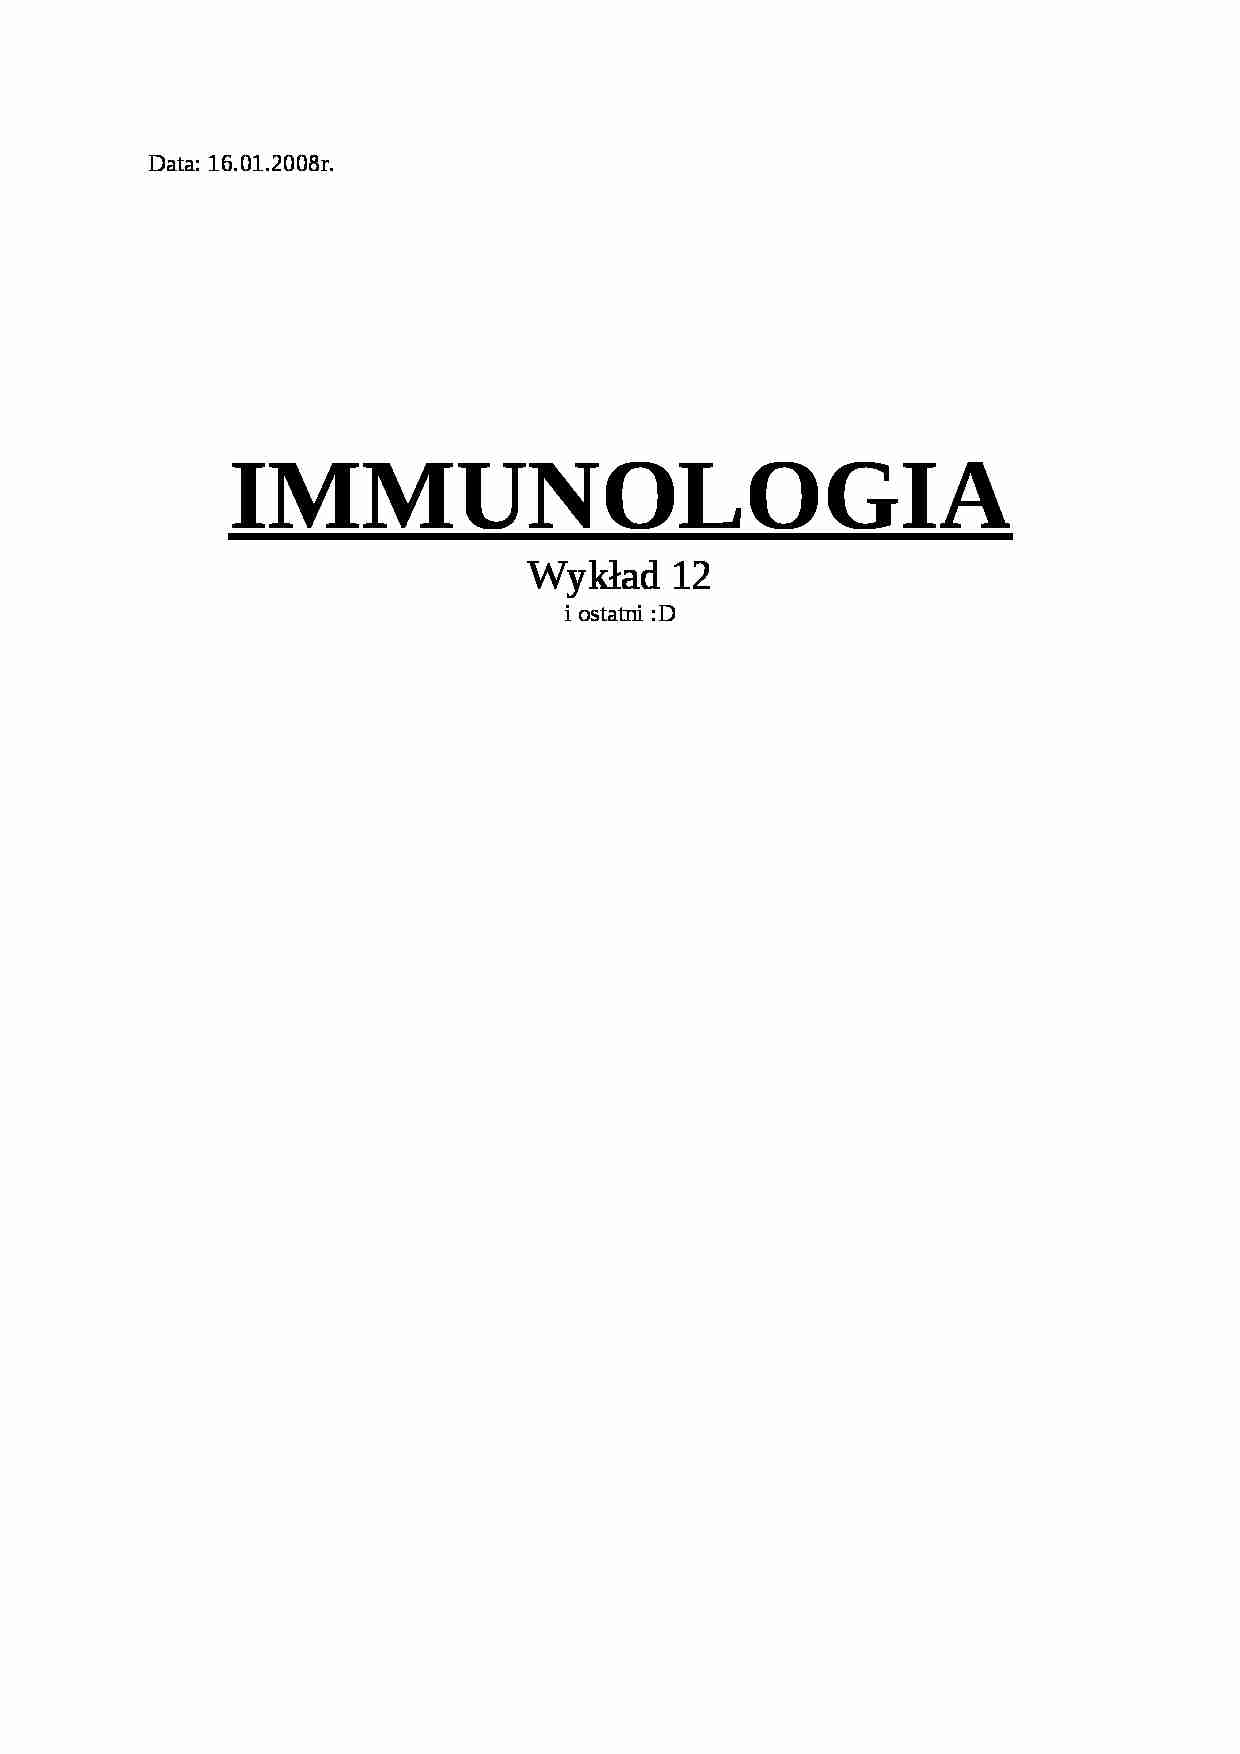 Immunologia - wykład 12 - strona 1